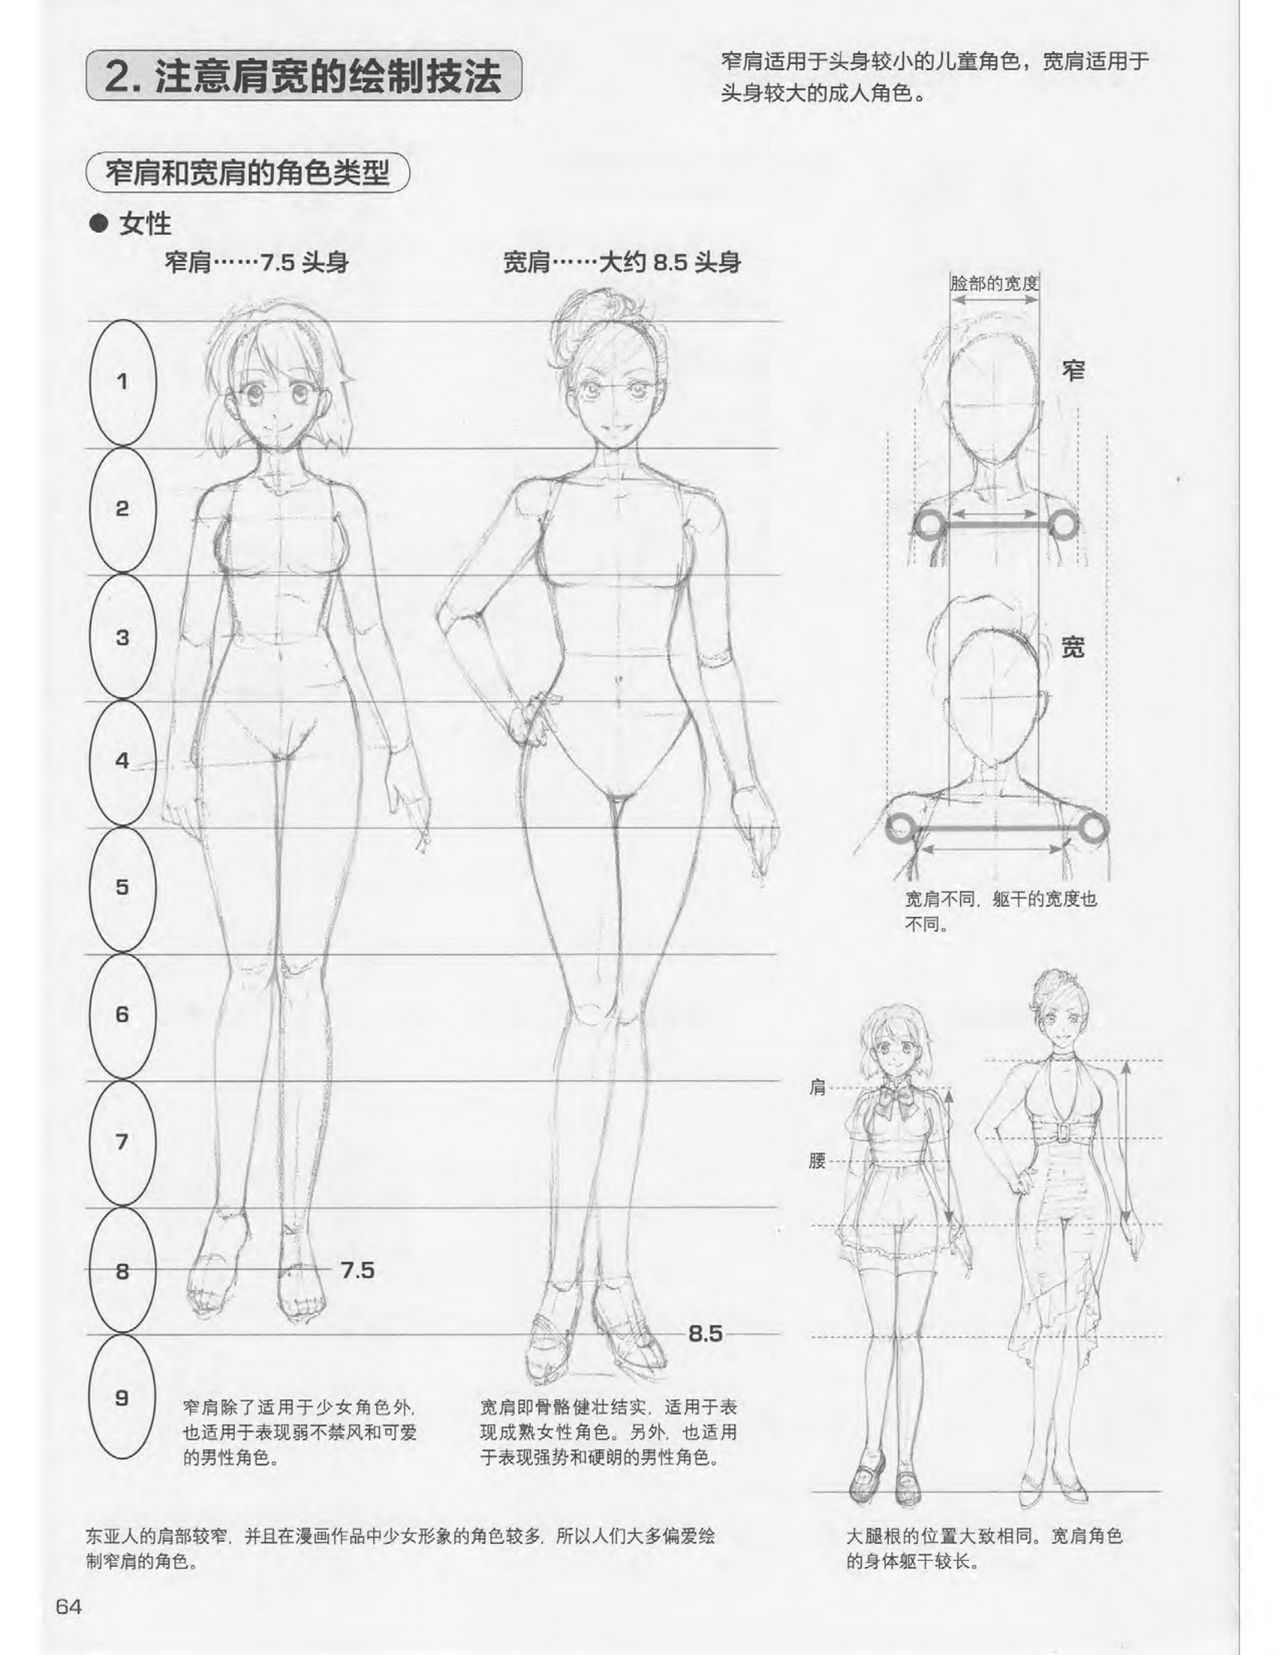 Japanese Manga Master Lecture 3: Lin Akira and Kakumaru Maru Talk About Glamorous Character Modeling 64